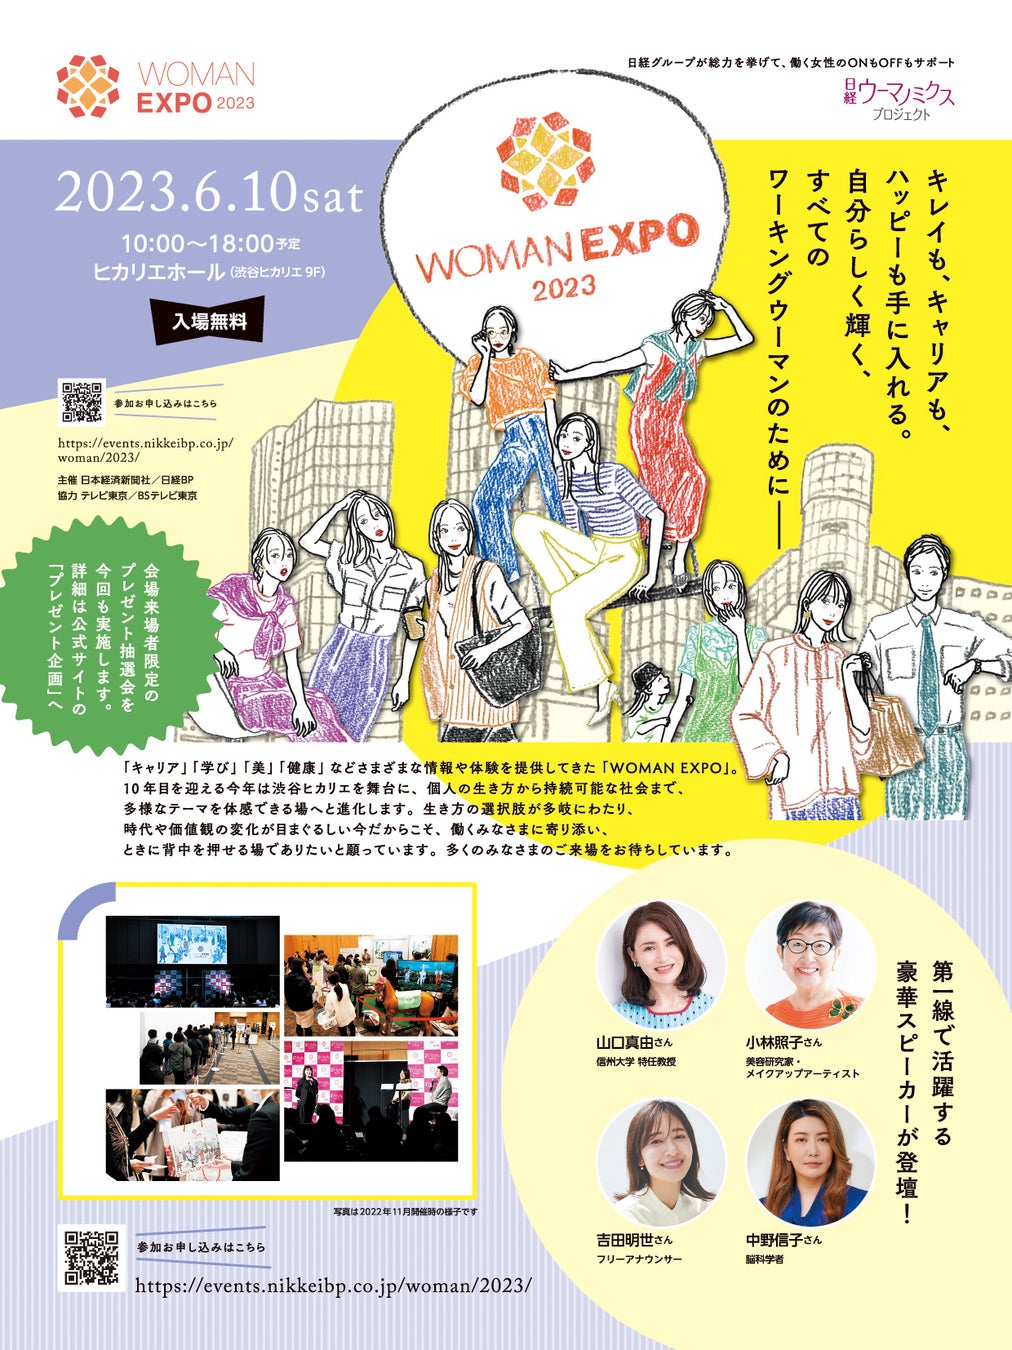 自分らしく輝くすべてのワーキングウーマンのための総合イベント！まもなく開催！ 「WOMAN EXPO 2023」、渋谷ヒカリエにて６月10日（土）、参加の事前申込（無料）を受付中！のサブ画像8